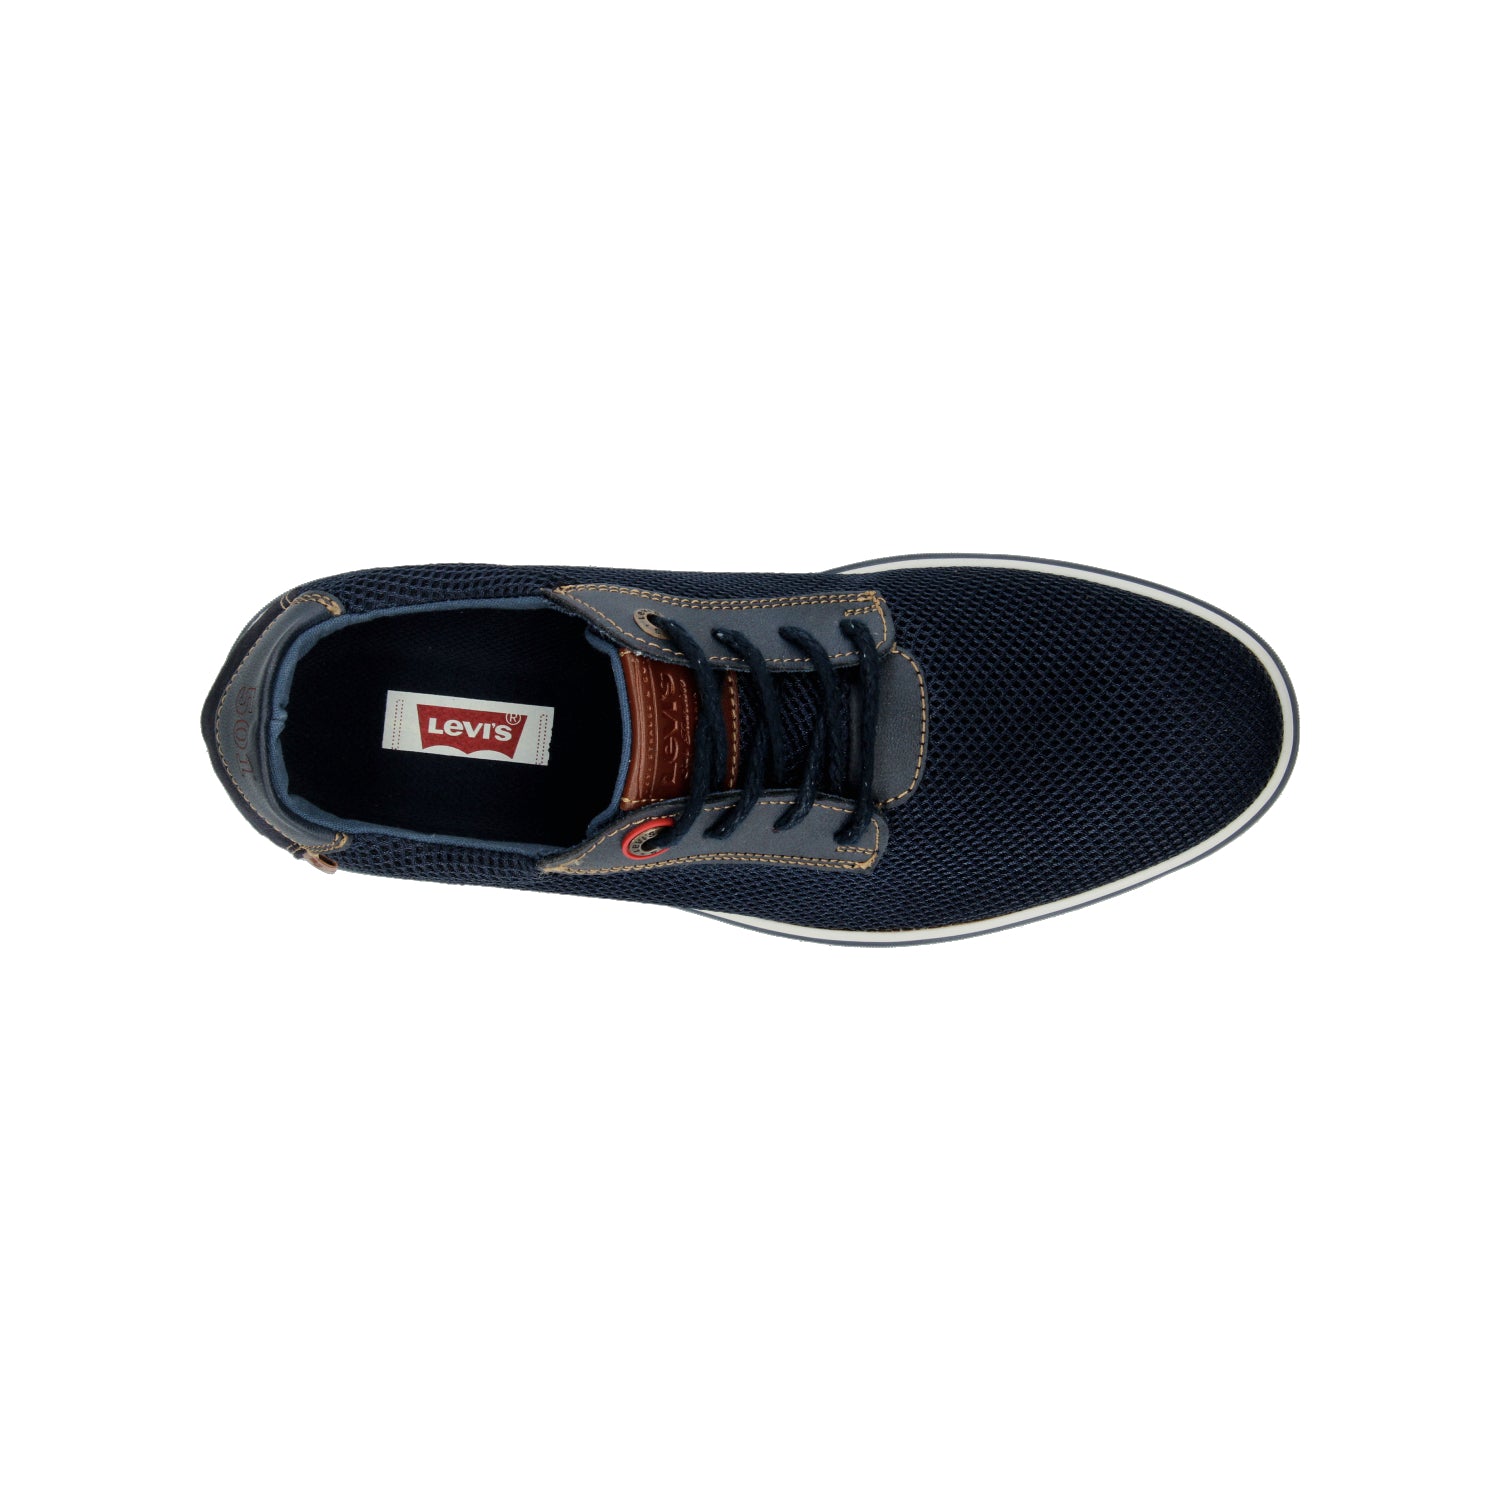 Zapato Casual Levis para Hombre L217104 Azul marino [LEV79]